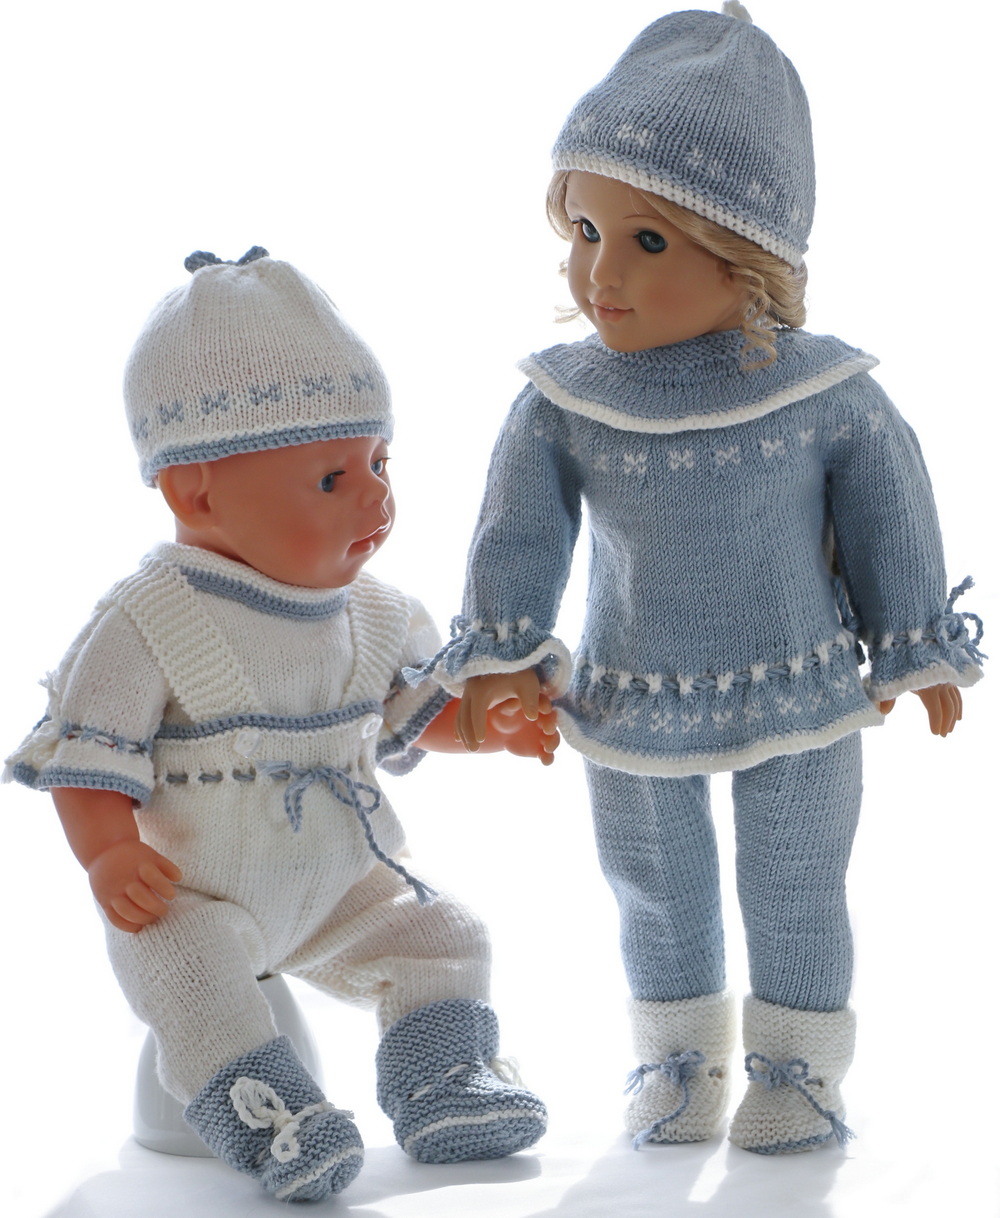 0232d-16-knitting-patterns-for-american-girl-dolls.jpg